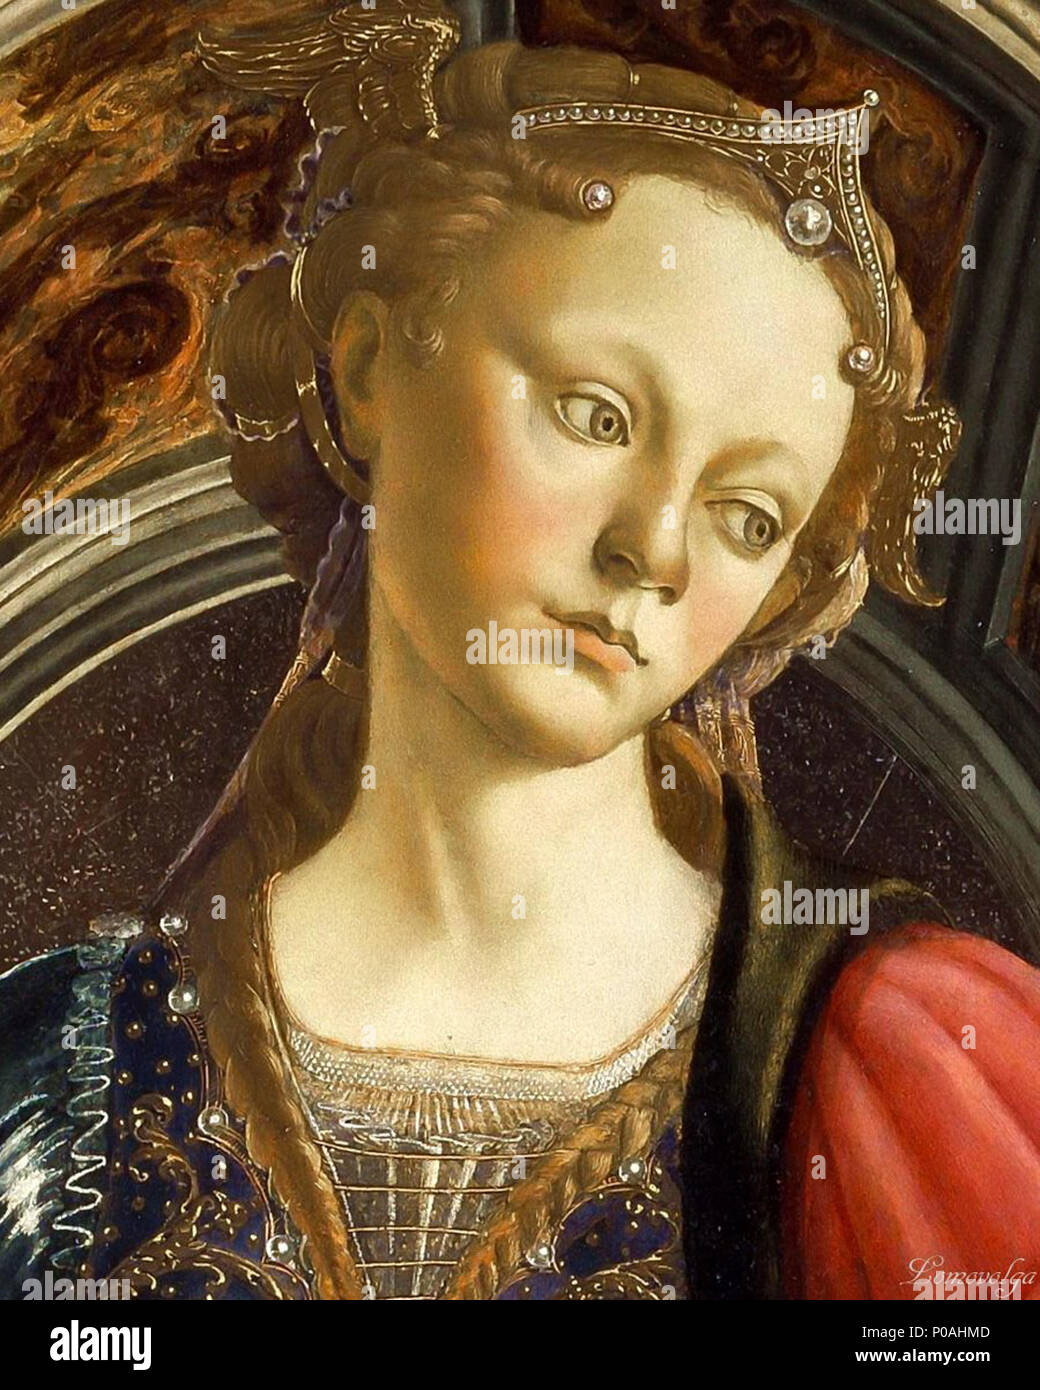 Inglese: dettaglio della testa della fortezza di Sandro Botticelli. La donna  rappresentata può essere Lucrezia Donati . 1470. Sandro Botticelli 34  Fortezza, testa dettaglio - Sandro Botticelli 01 Foto stock - Alamy